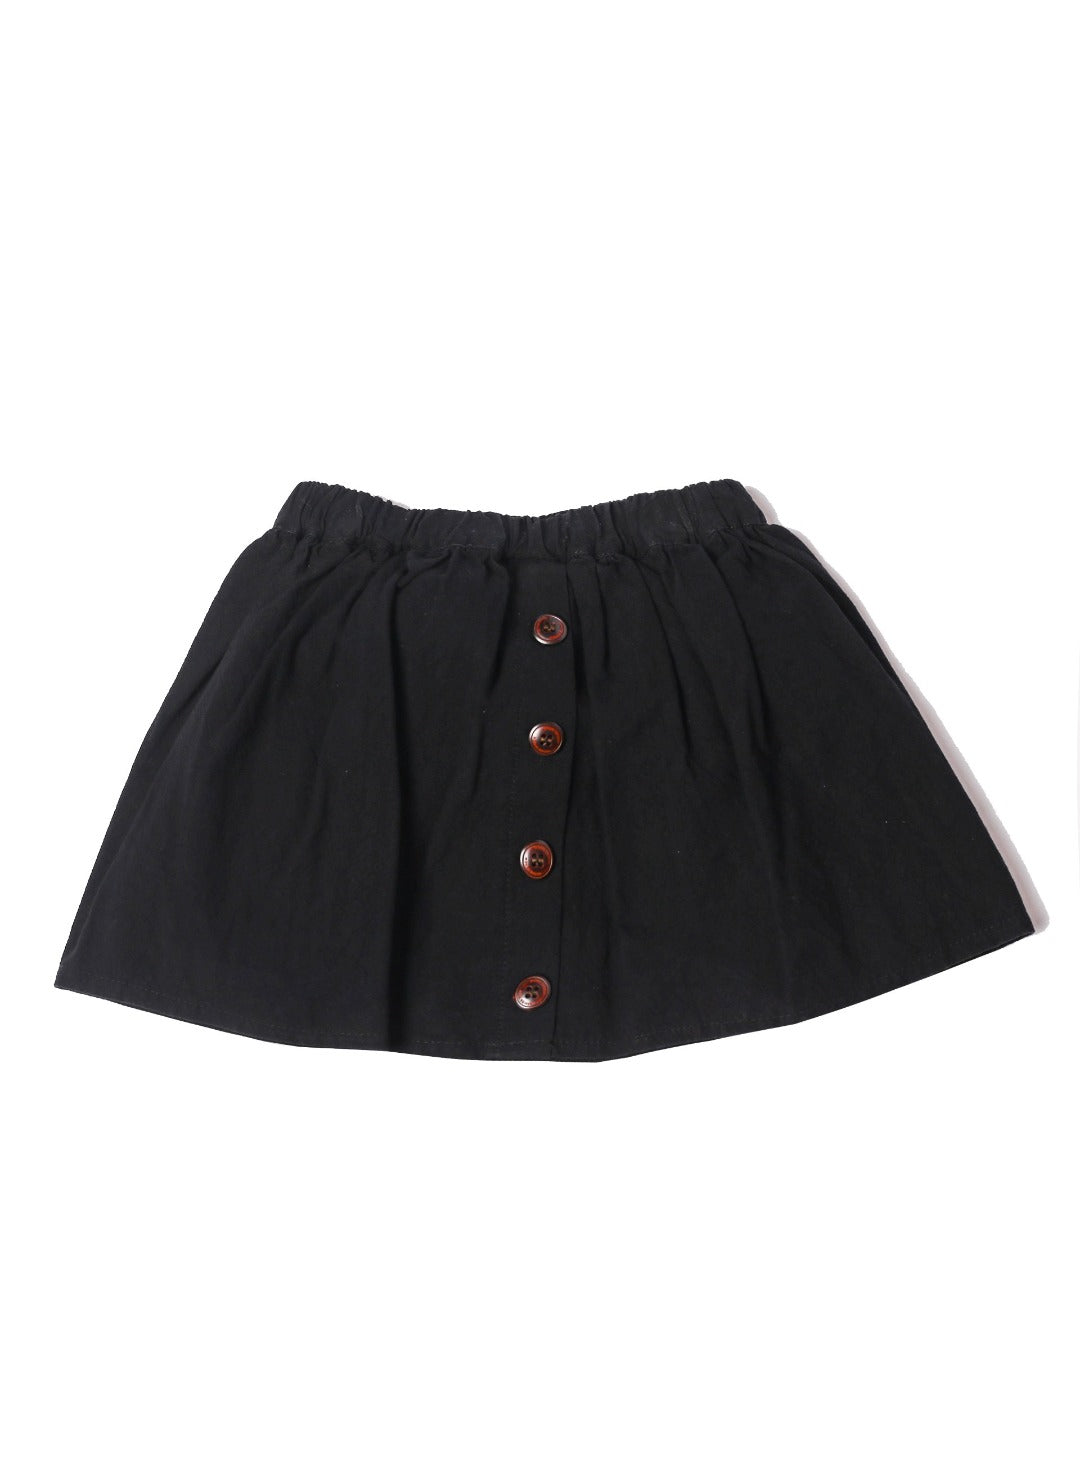 opaque black skater skirt 